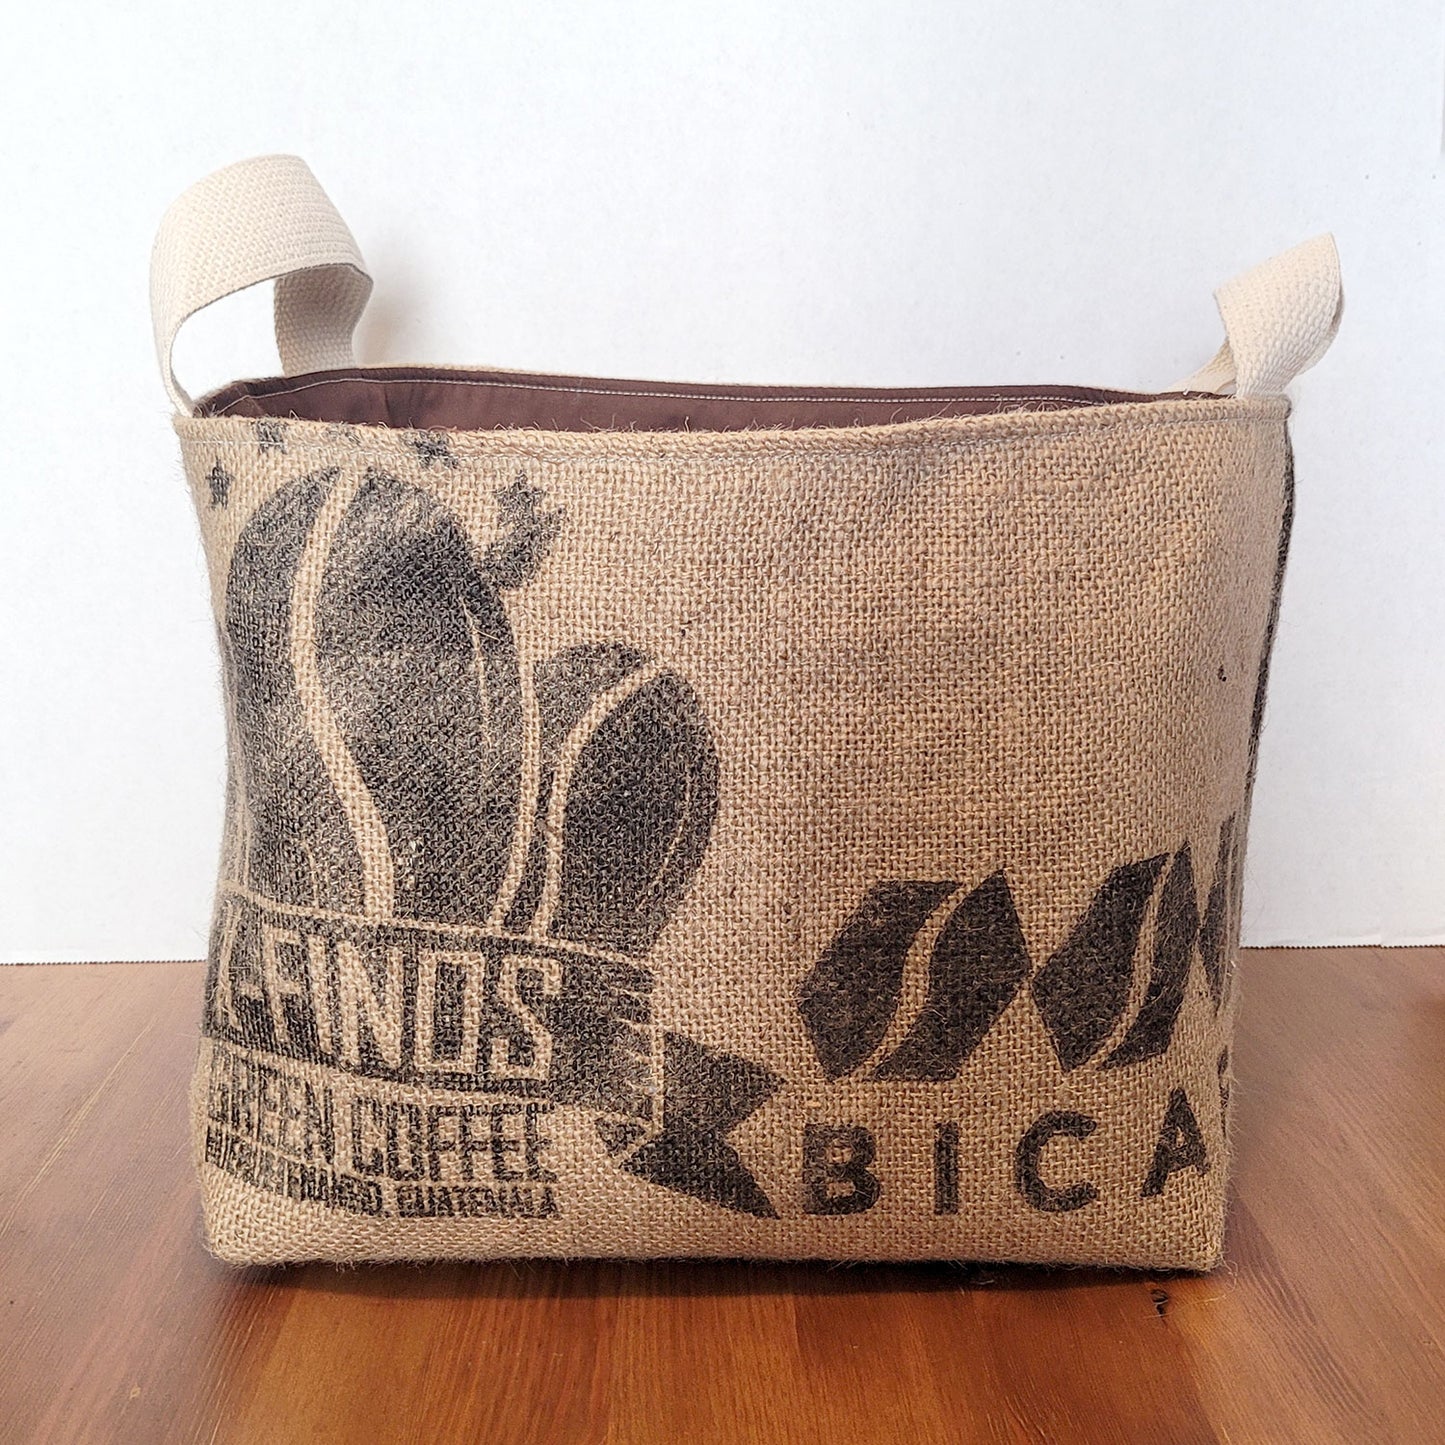 Upcycled Coffee Sack Basket - large